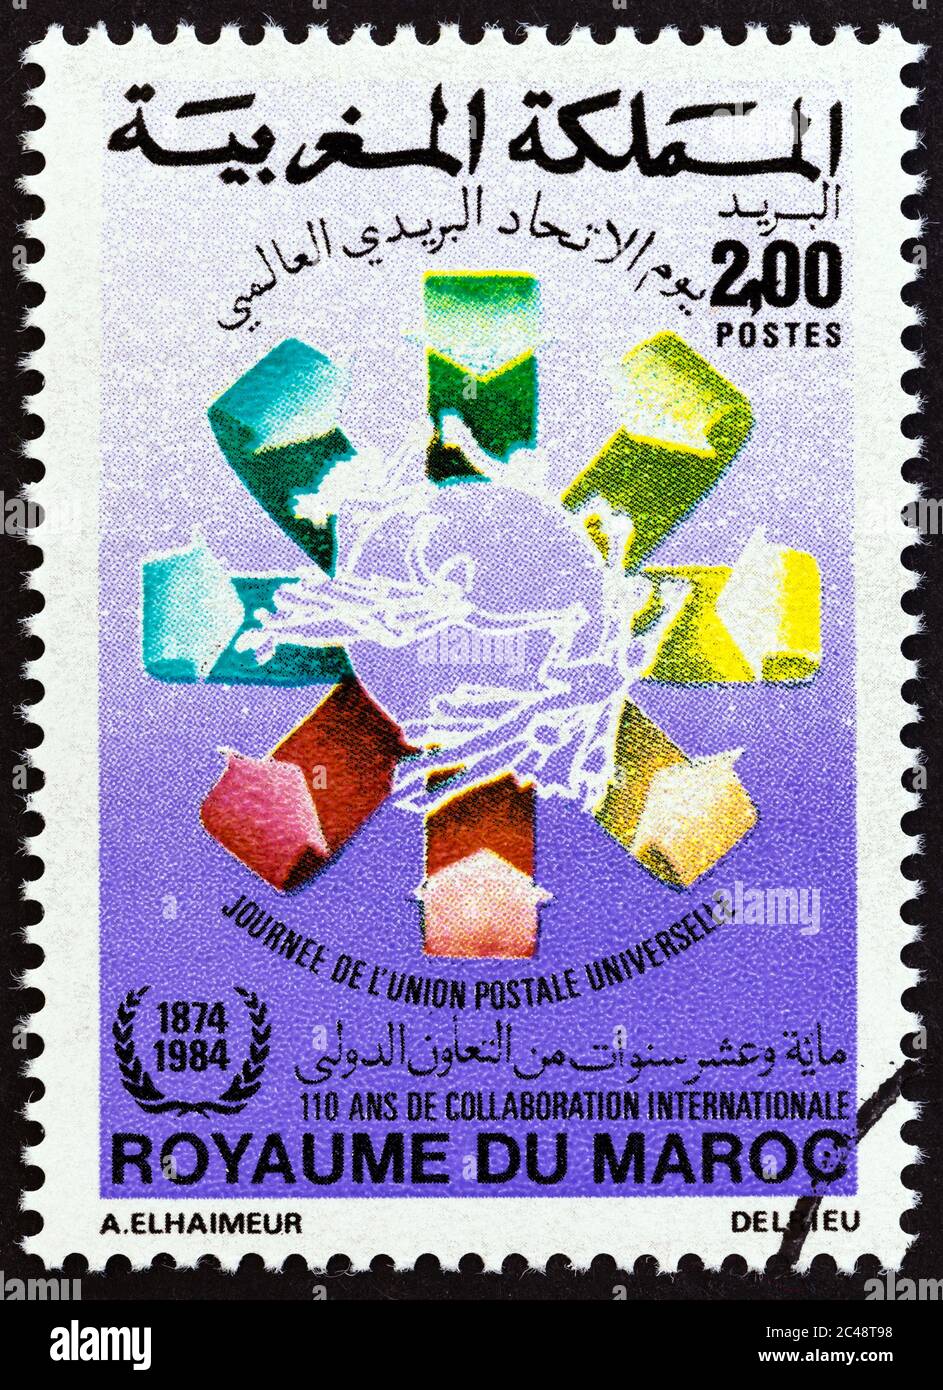 MAROCCO - CIRCA 1984: Un francobollo stampato in Marocco rilasciato per l'emblema della Giornata dell'Unione postale universale, circa 1984. Foto Stock